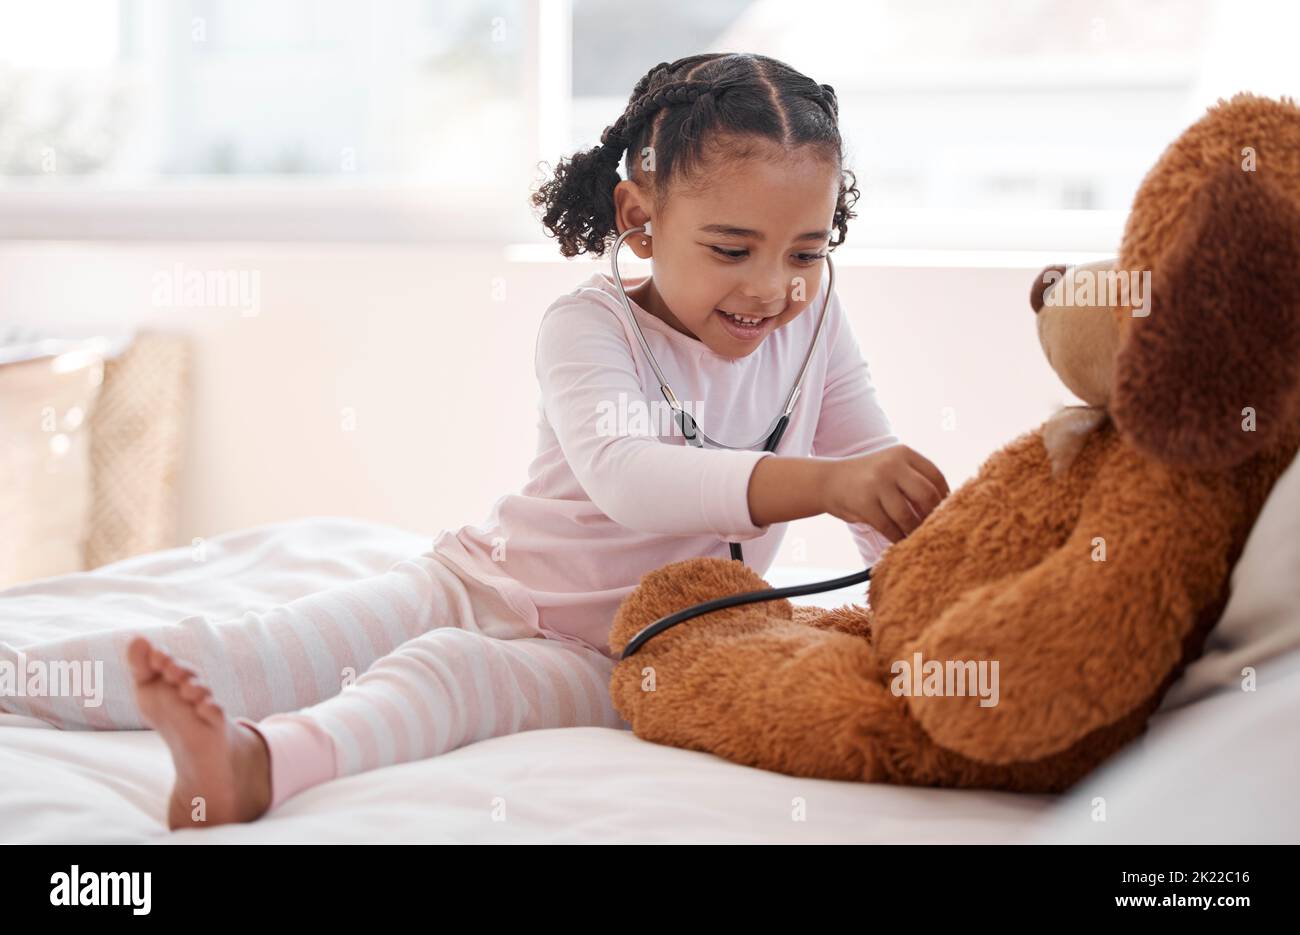 Una ragazza nera che gioca medico di ospedale con un orsacchiotto sul suo letto, tenendo uno stetoscopio e immaginando un bambino. Sviluppo secondario per un lavoro futuro come a. Foto Stock